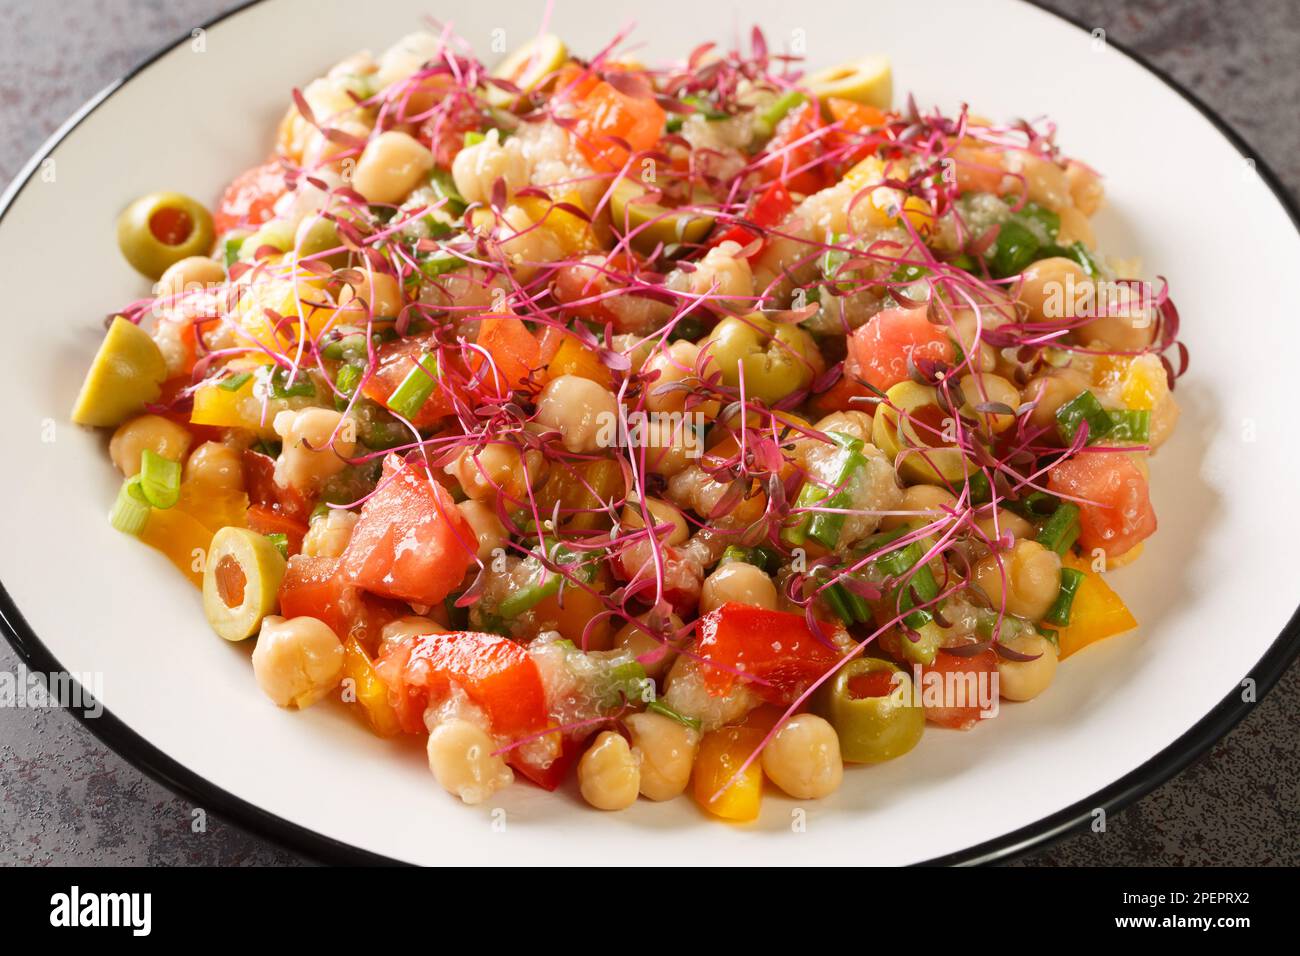 Ensalada de dieta mediterránea de garbanzos, pimientos, aceitunas, tomates, cebollas y amaranto microgreens y semillas de cerca en un plato sobre la mesa. Horizontal Foto de stock